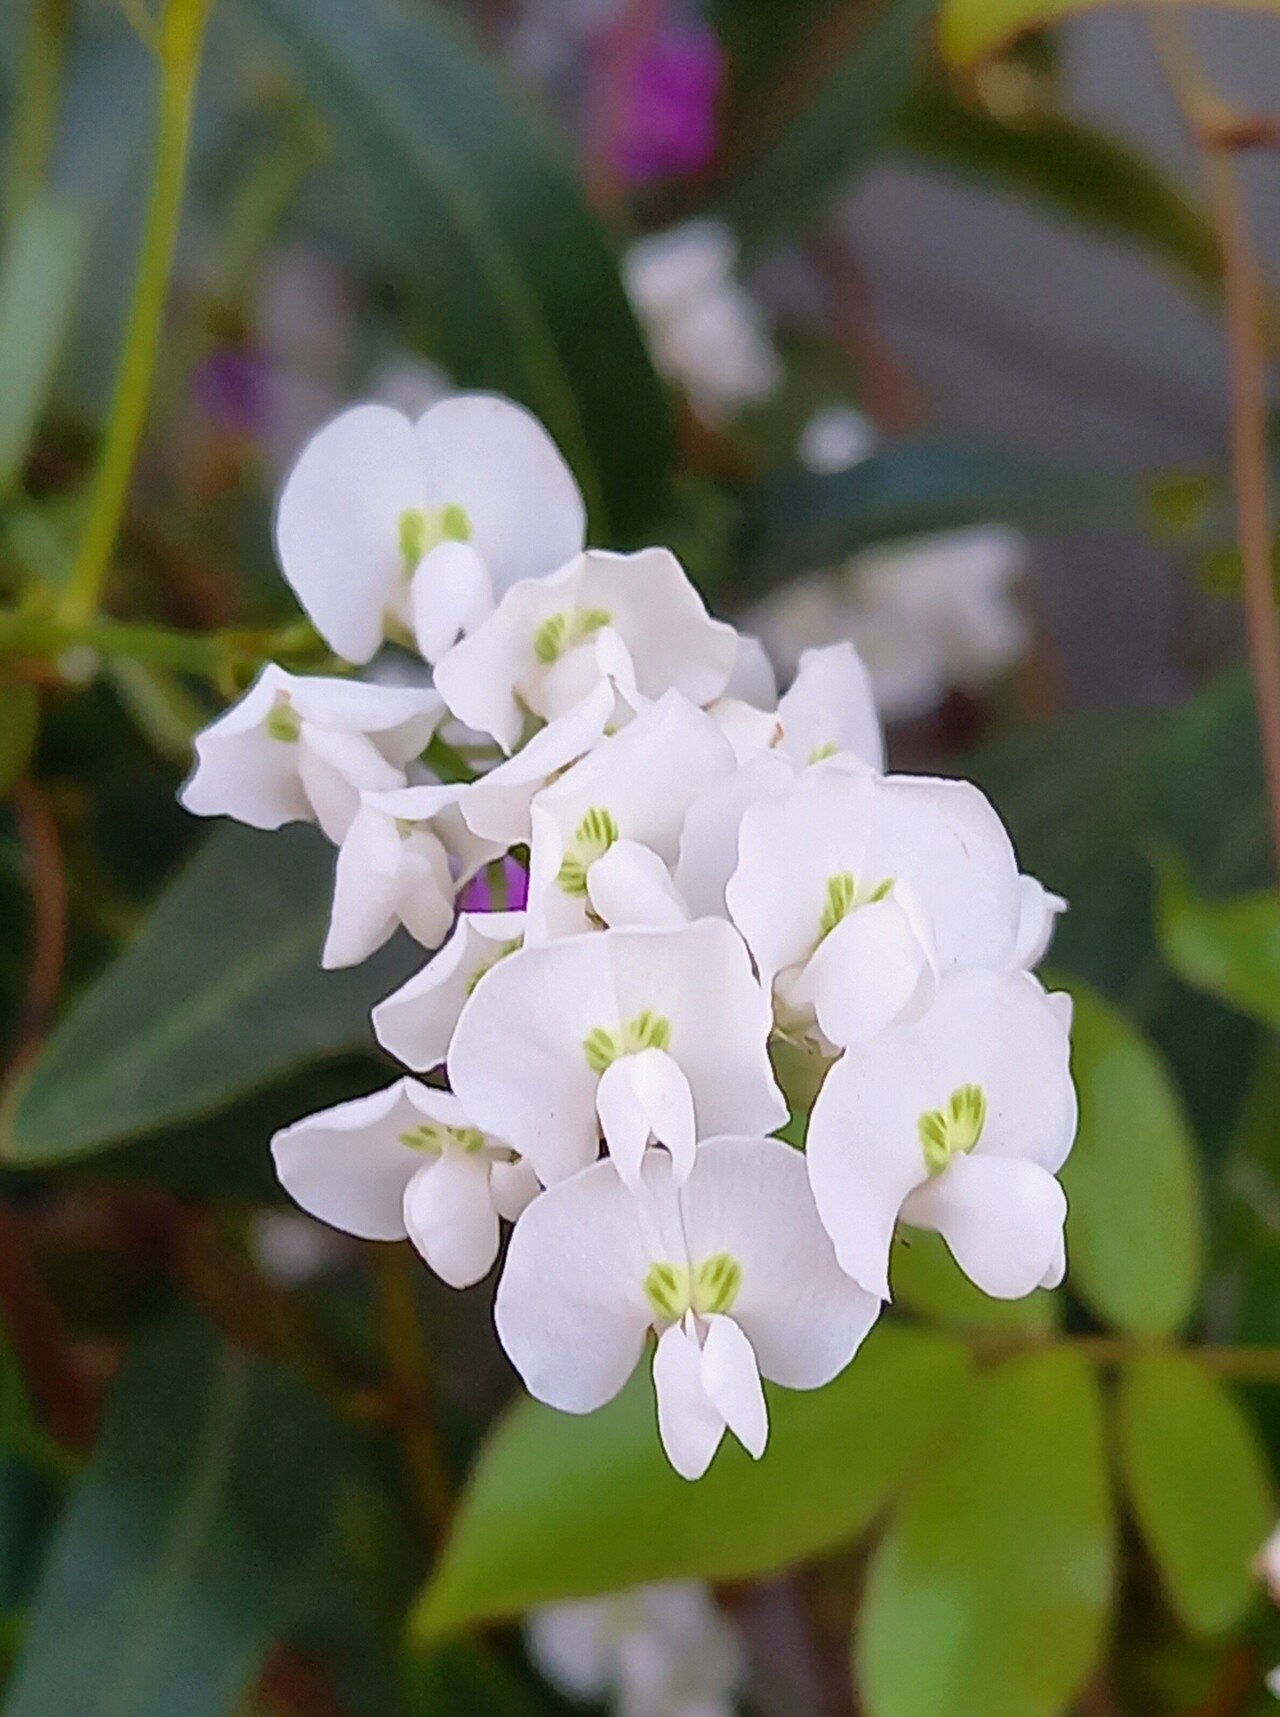 散策中に遭遇した白色の花たち 柘榴 Note